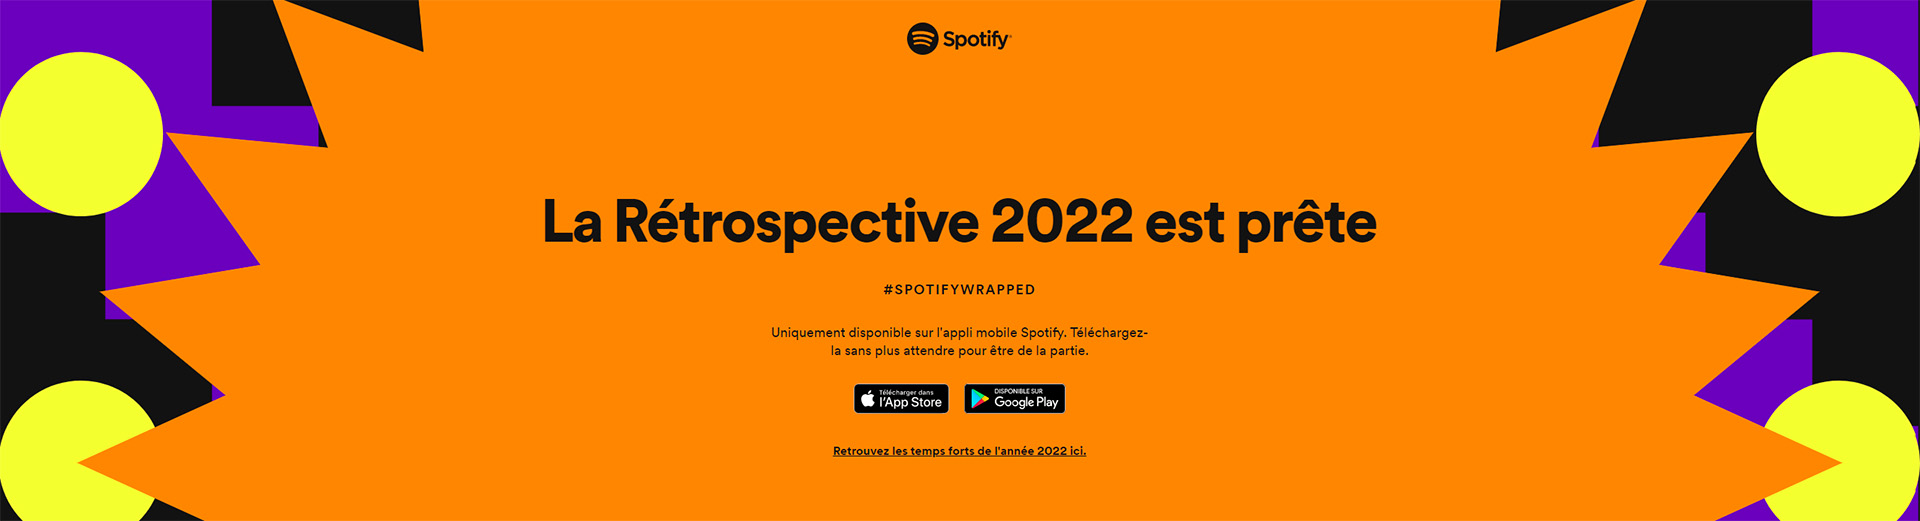 Spotify - Rétrospective 2022